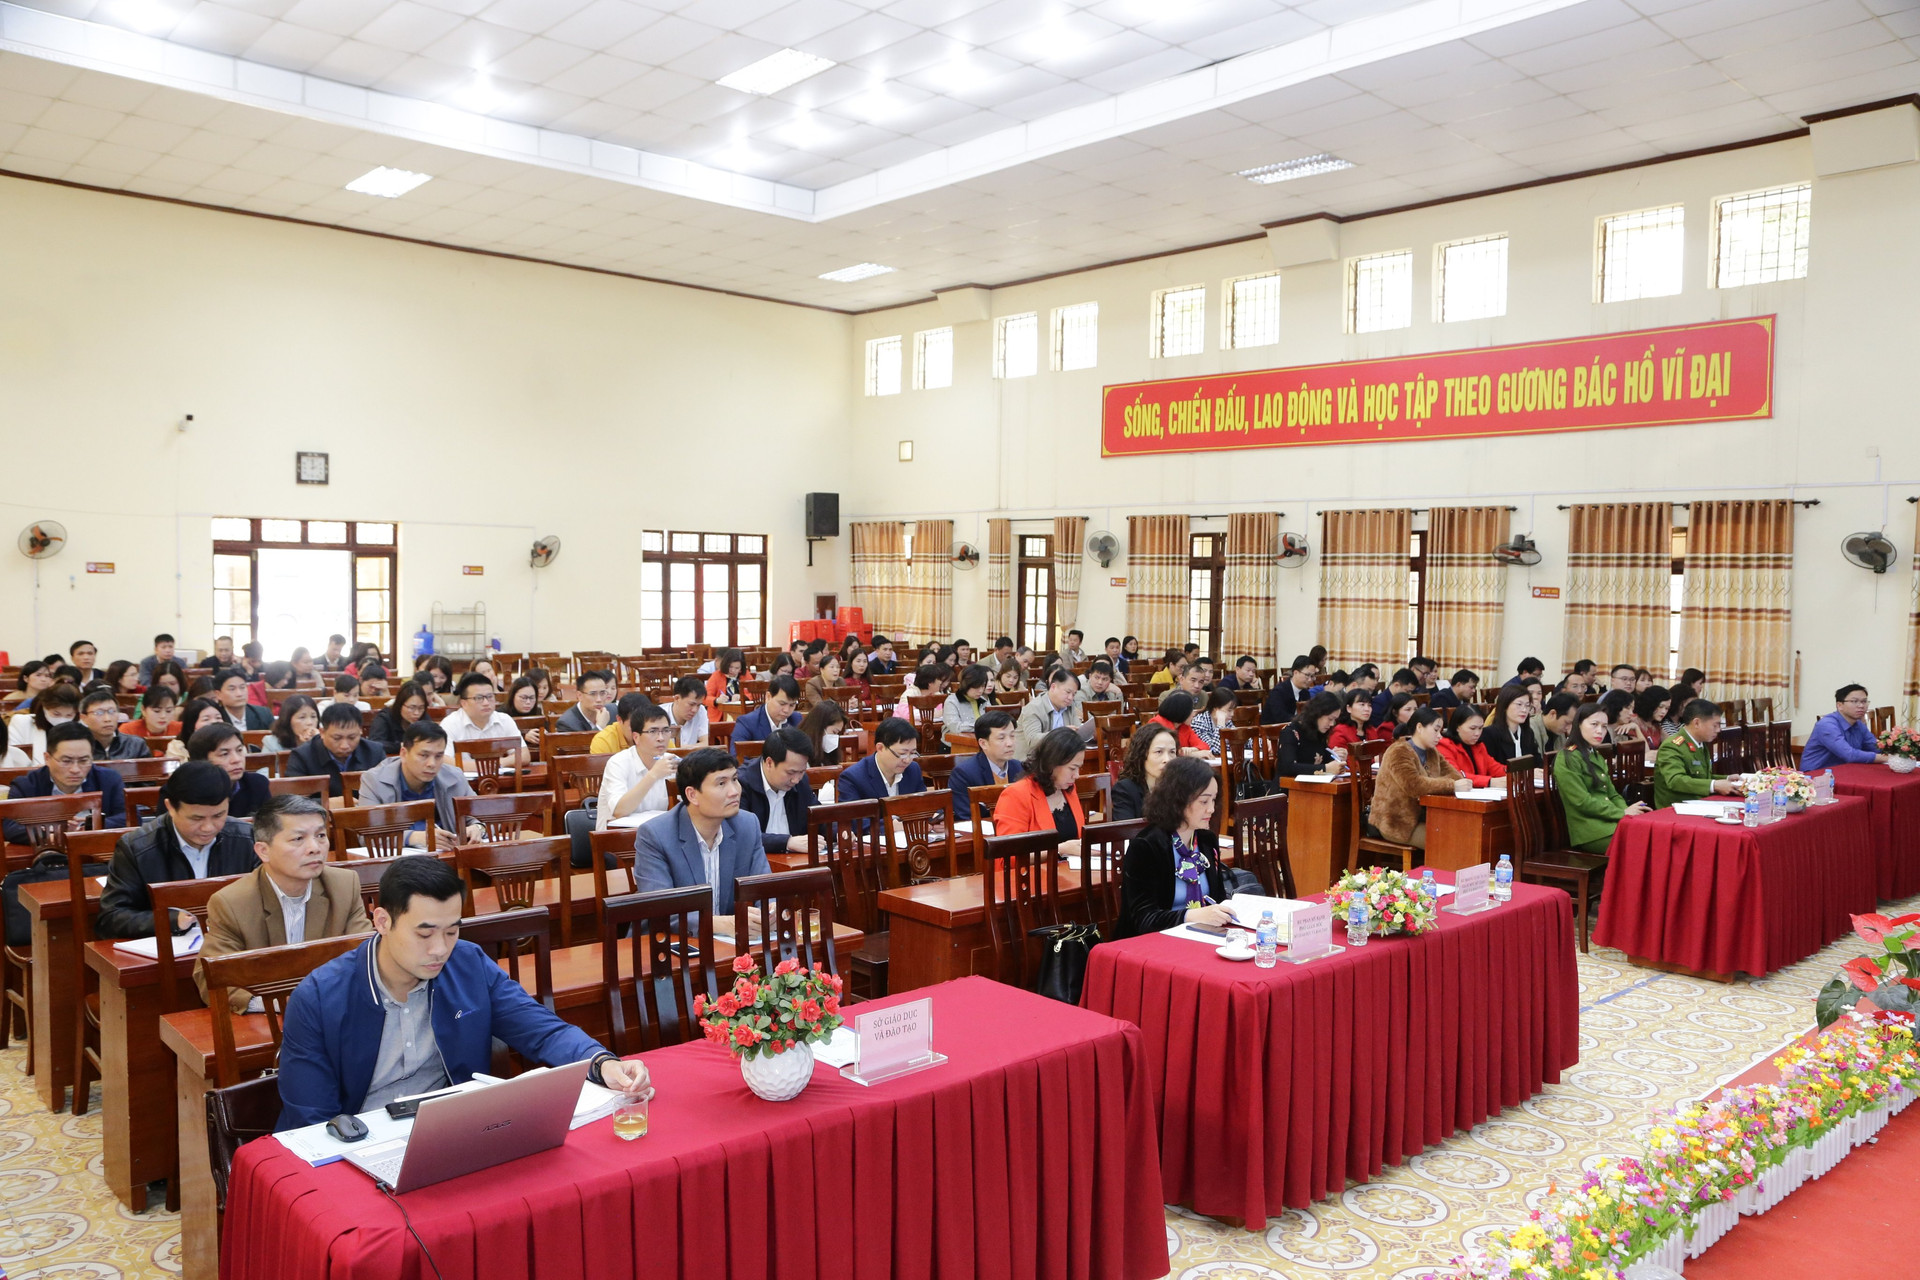 Lạng Sơn: Tập huấn rà soát quy định, thủ tục hành chính trong lĩnh vực giáo dục